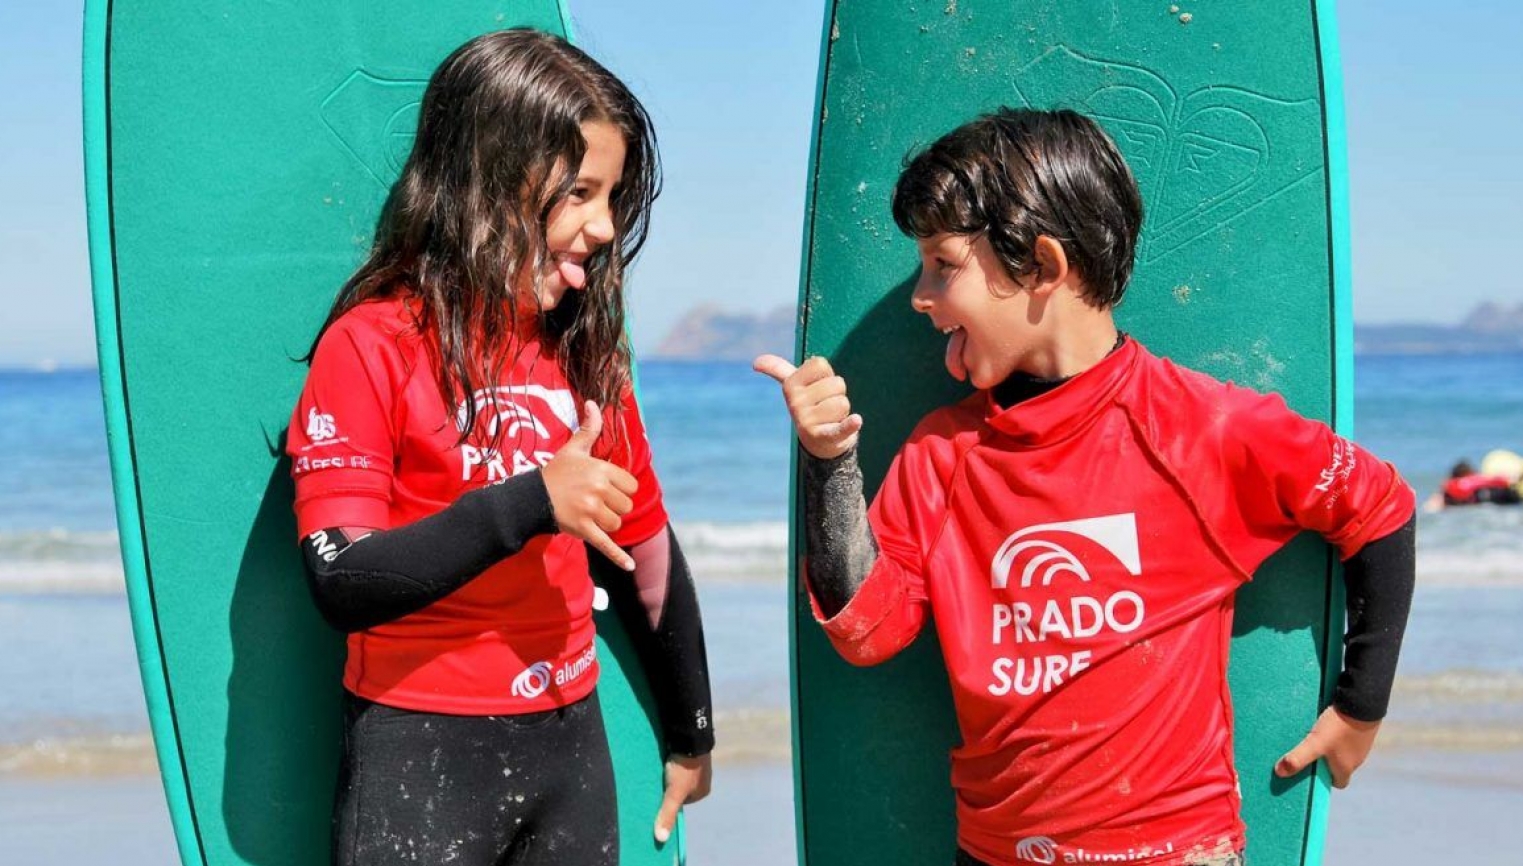 CURSOS DE SURF EN A LANZADA - foto 1/5